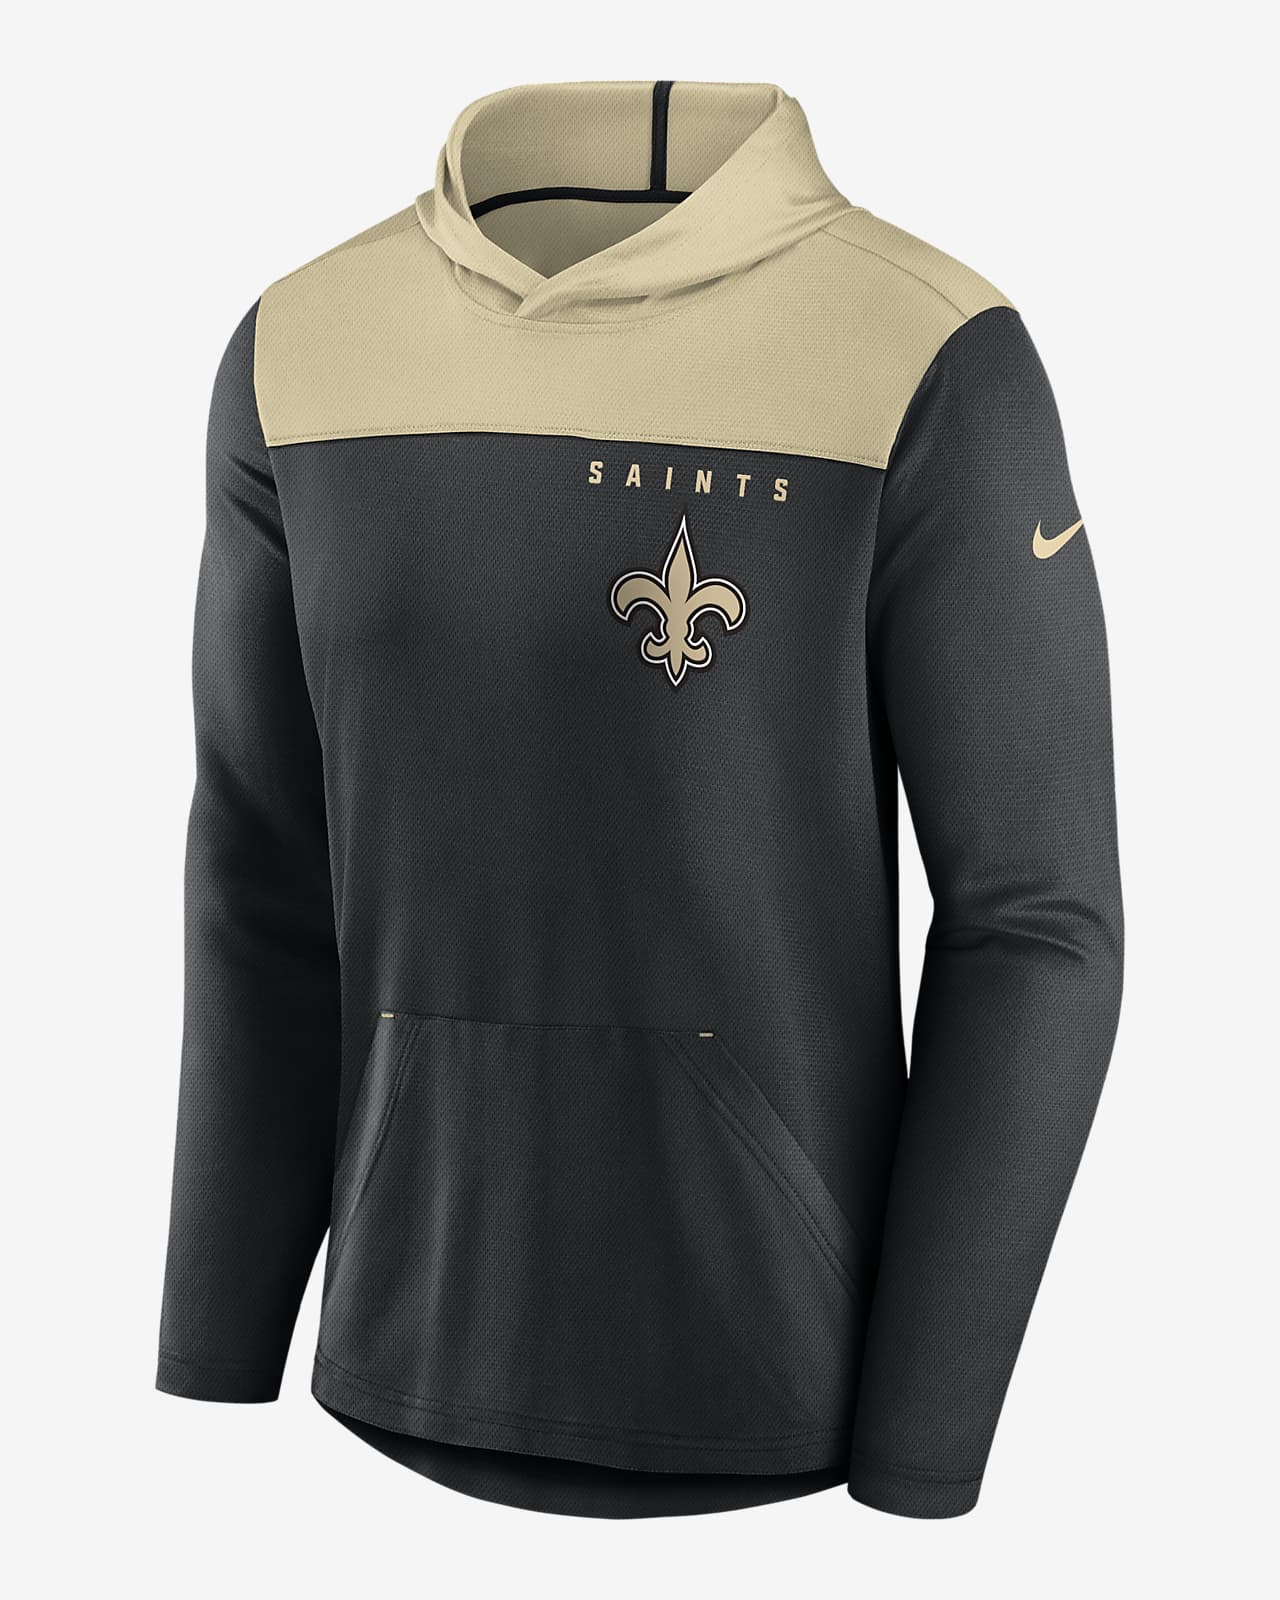 New Orleans Saints Men's Nike NFL Pullover Hoodie